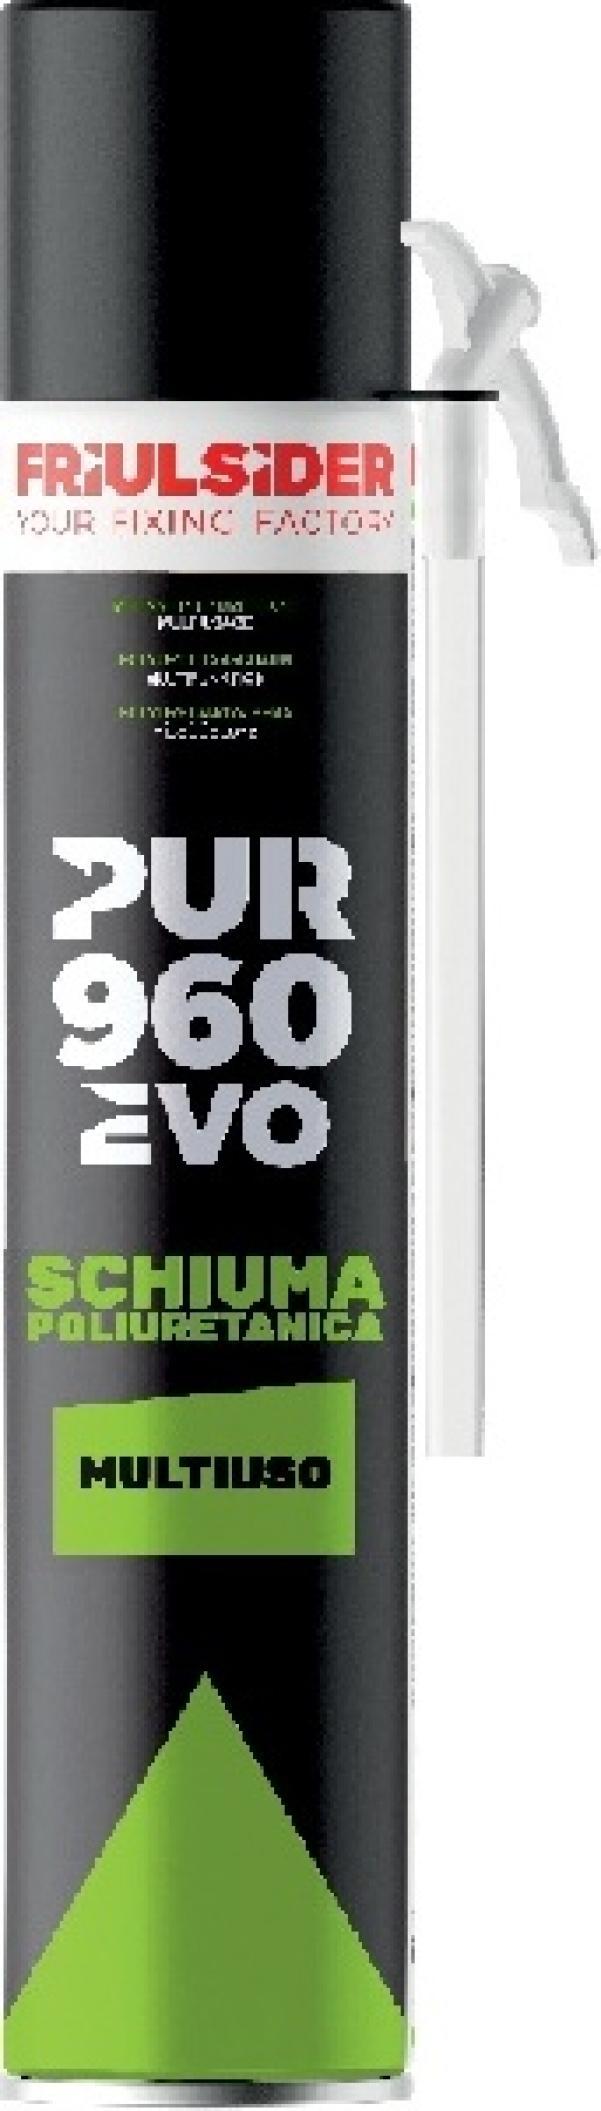 PUR 960 EVO MULTIUSO Schiuma poliuretanica B3 Friulsider 96000E0000000